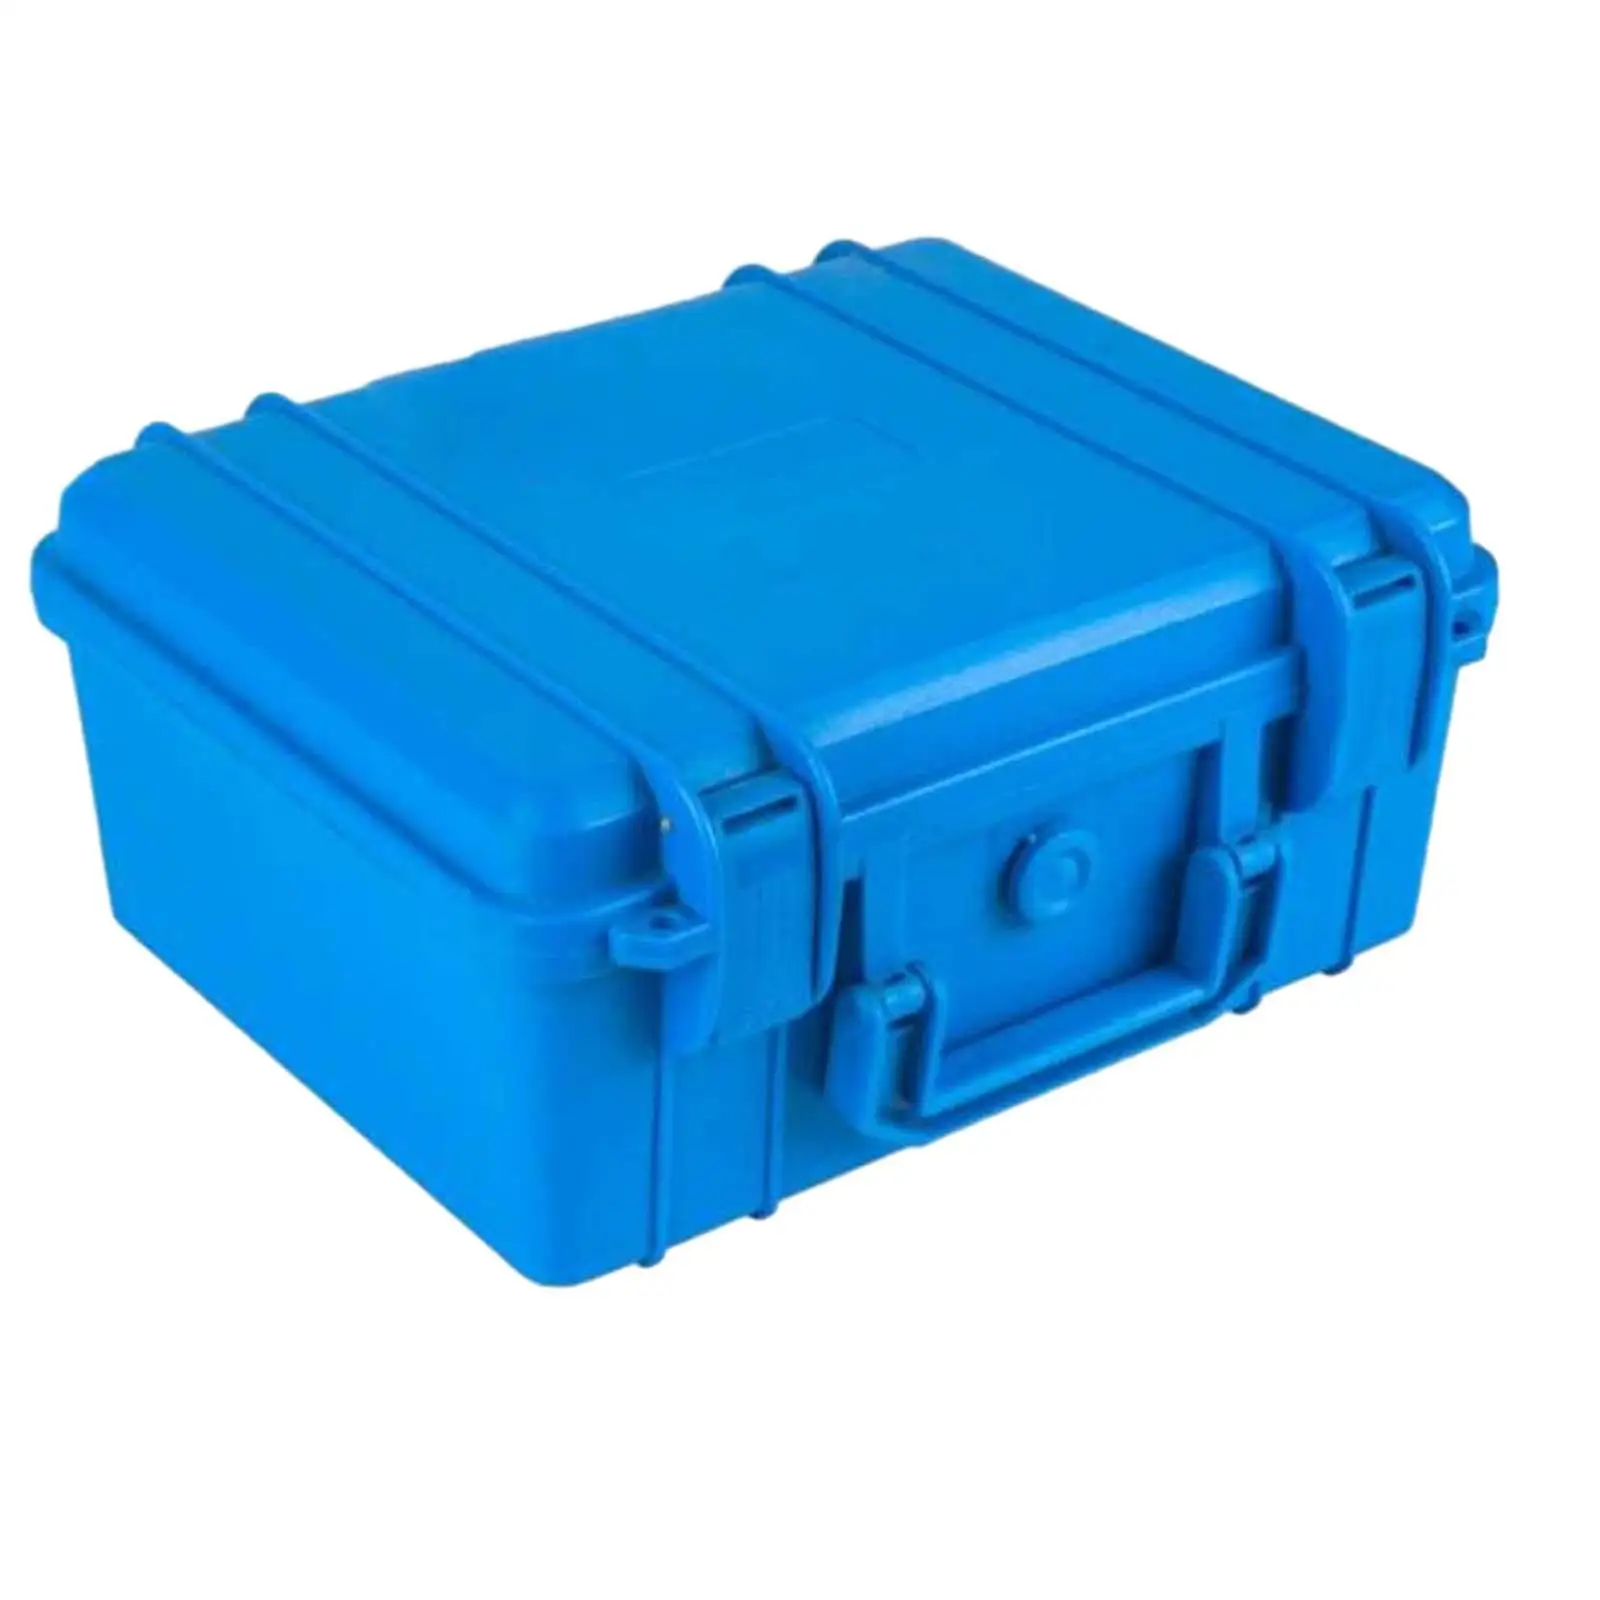 Tool Case with Sponge Multifunction Waterproof Shockproof Repair Tool Storage Case for Garage Outdoor Household Camera